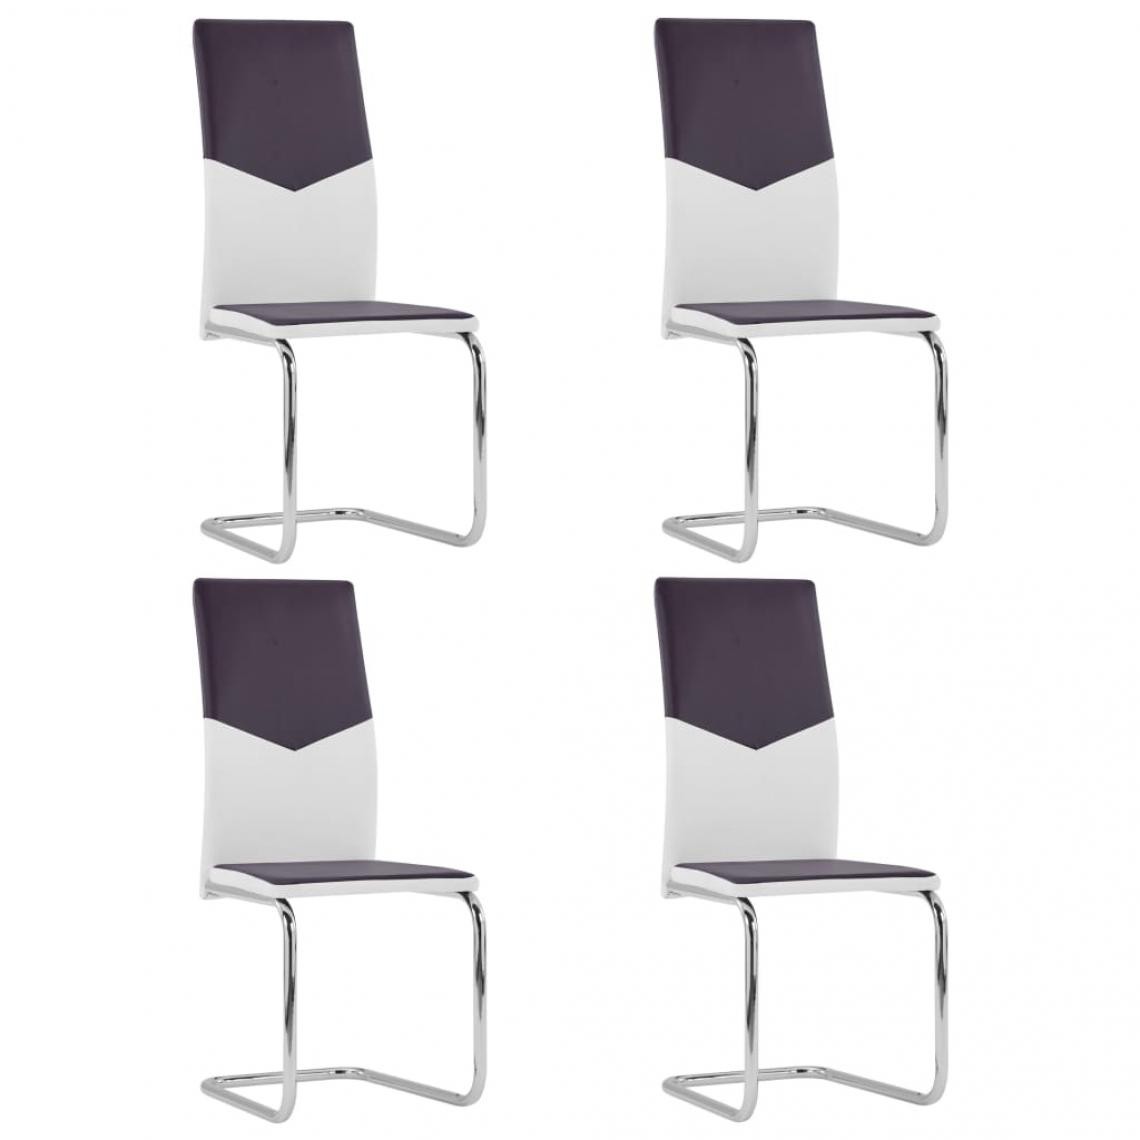 Decoshop26 - Lot de 4 chaises de salle à manger cuisine cantilever design moderne similicuir marron CDS021407 - Chaises